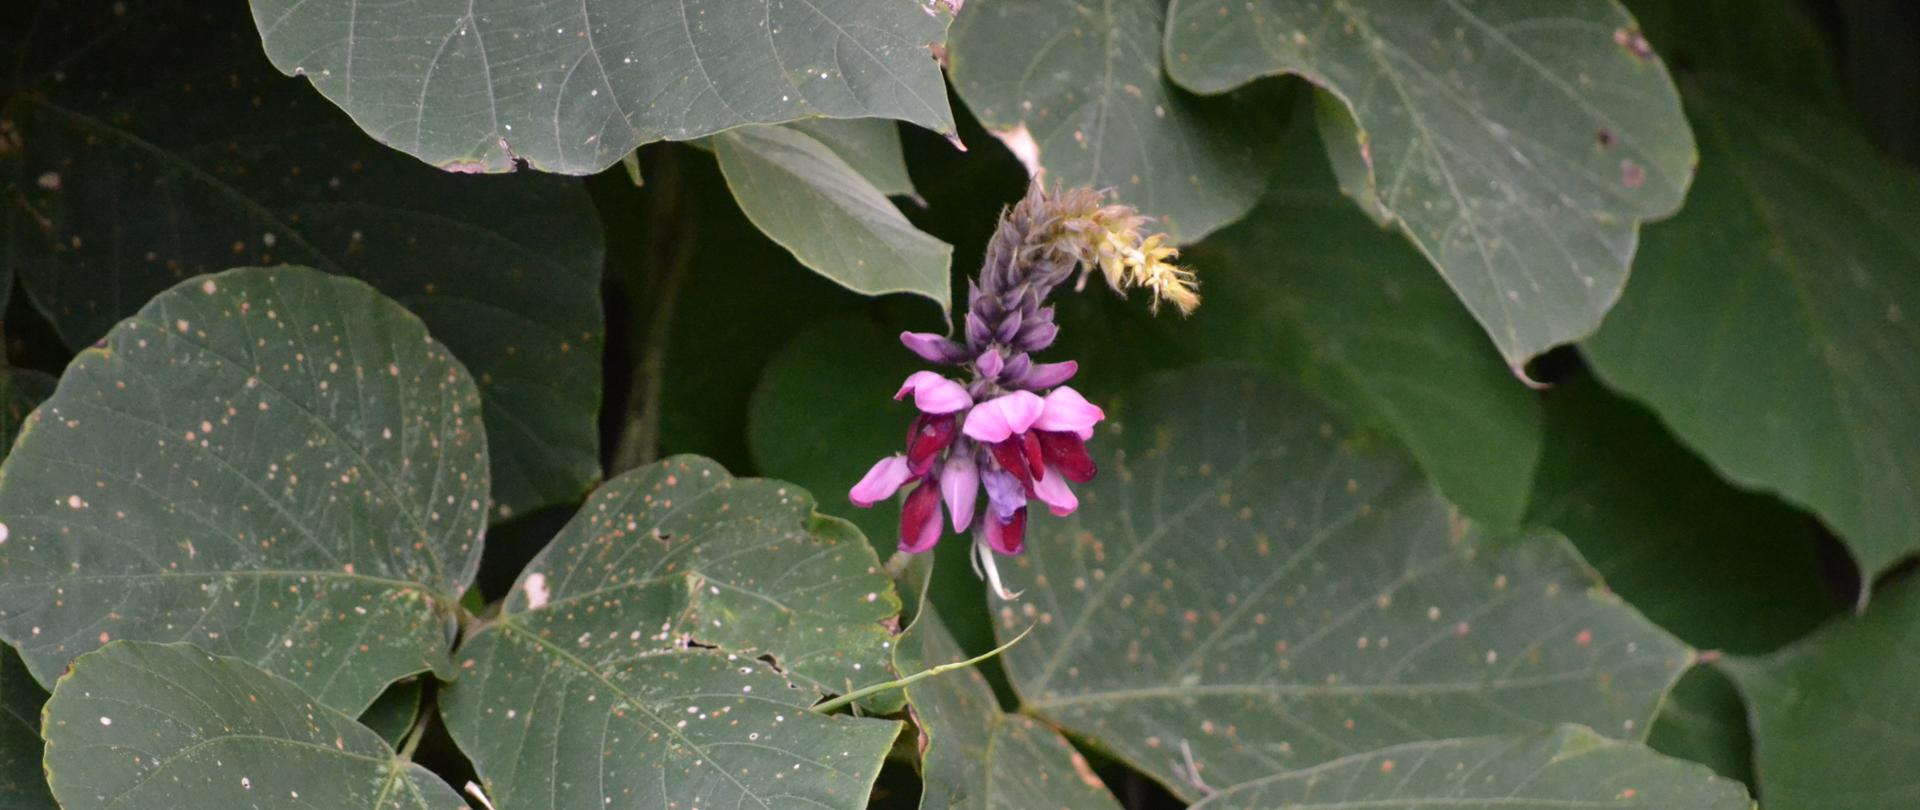 Na tle zielonych liści o kształcie sercowatym rośnie pojedynczy, fioletowy kwiat opornika łatkowatego.